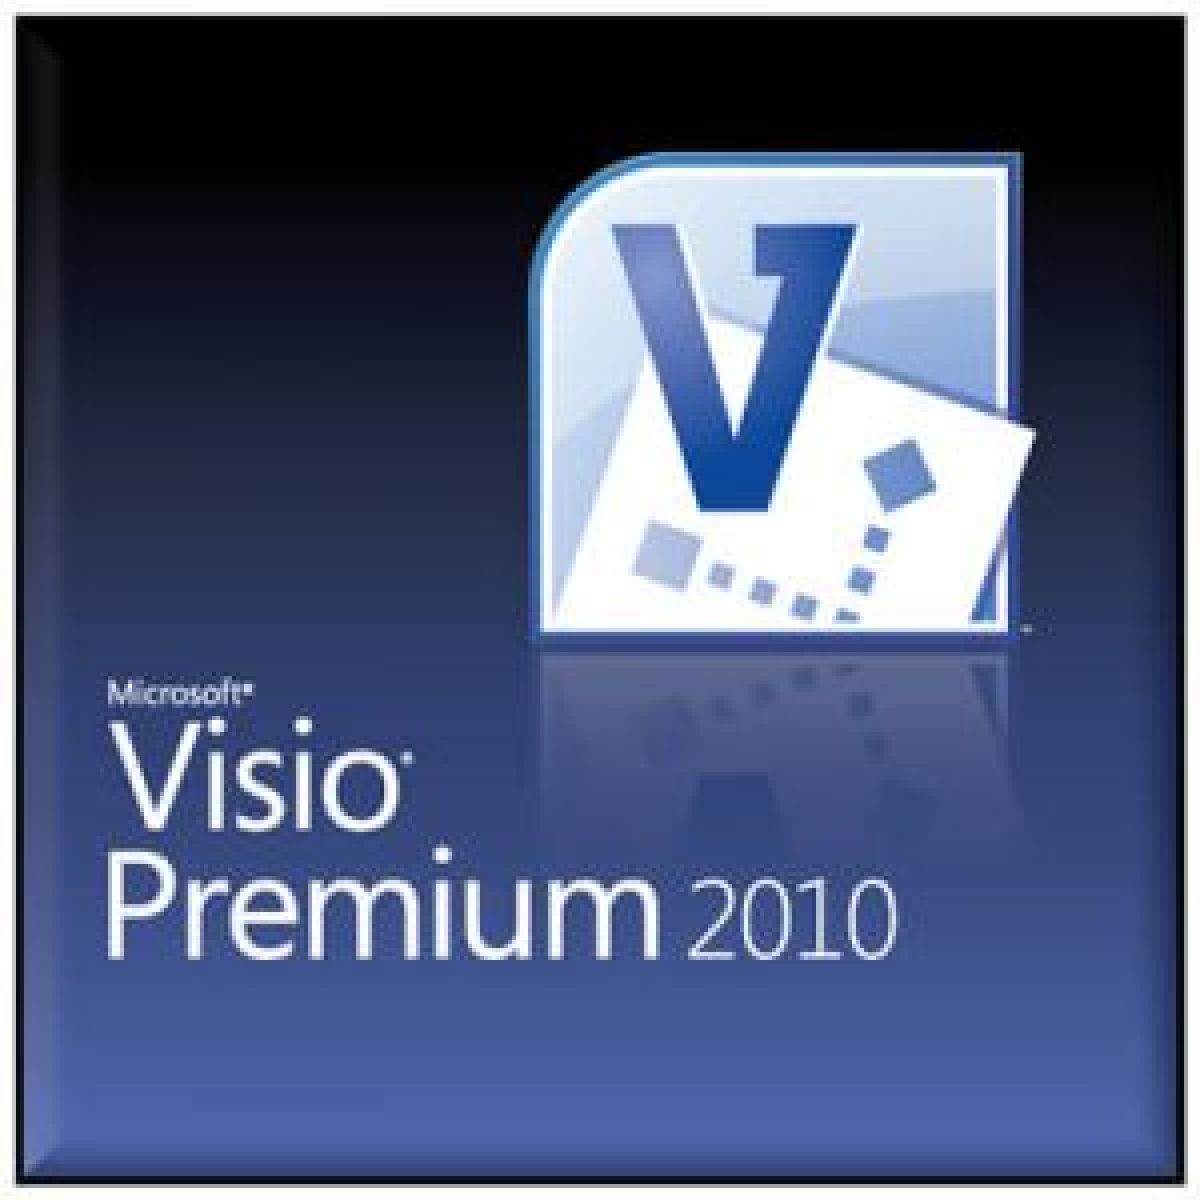 Buy Office Visio Premium 2010 mac os